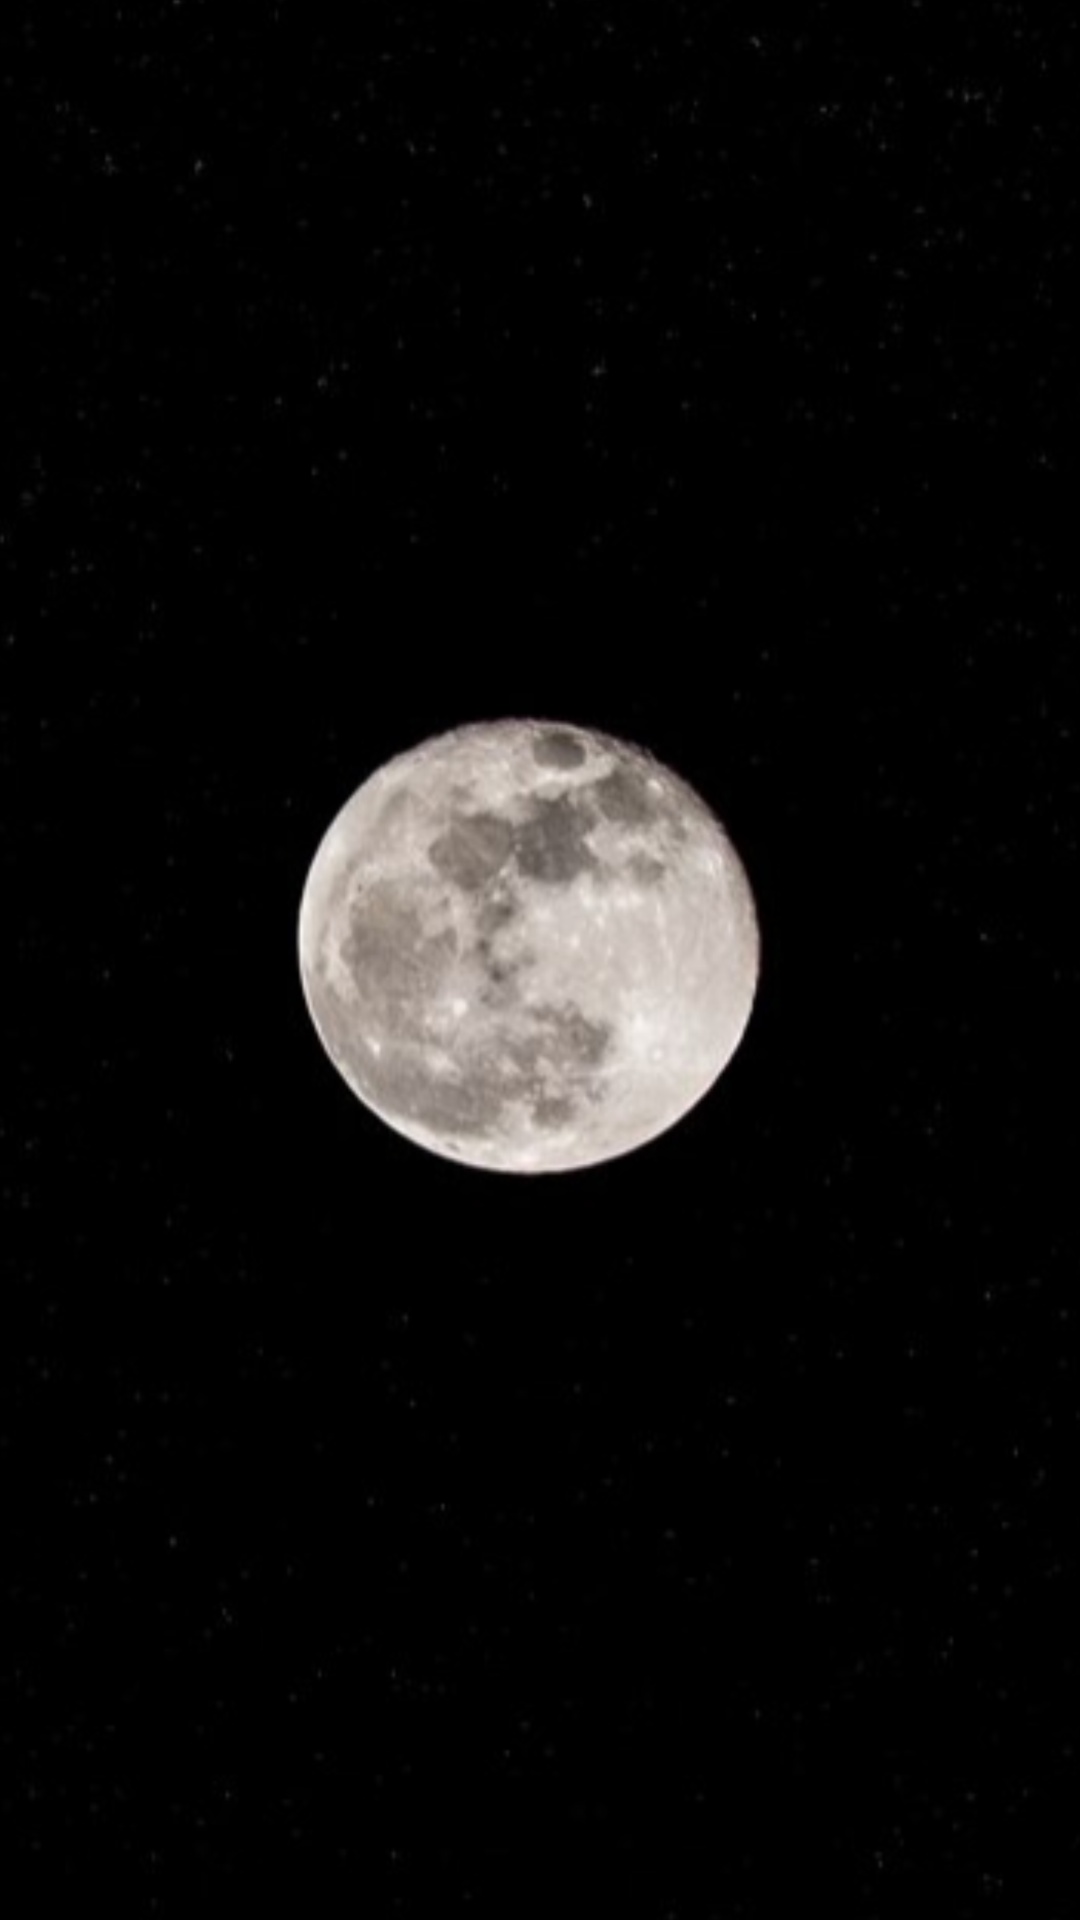 चंद्र ग्रहण के दिन क्या करना चाहिए और क्या नहीं?